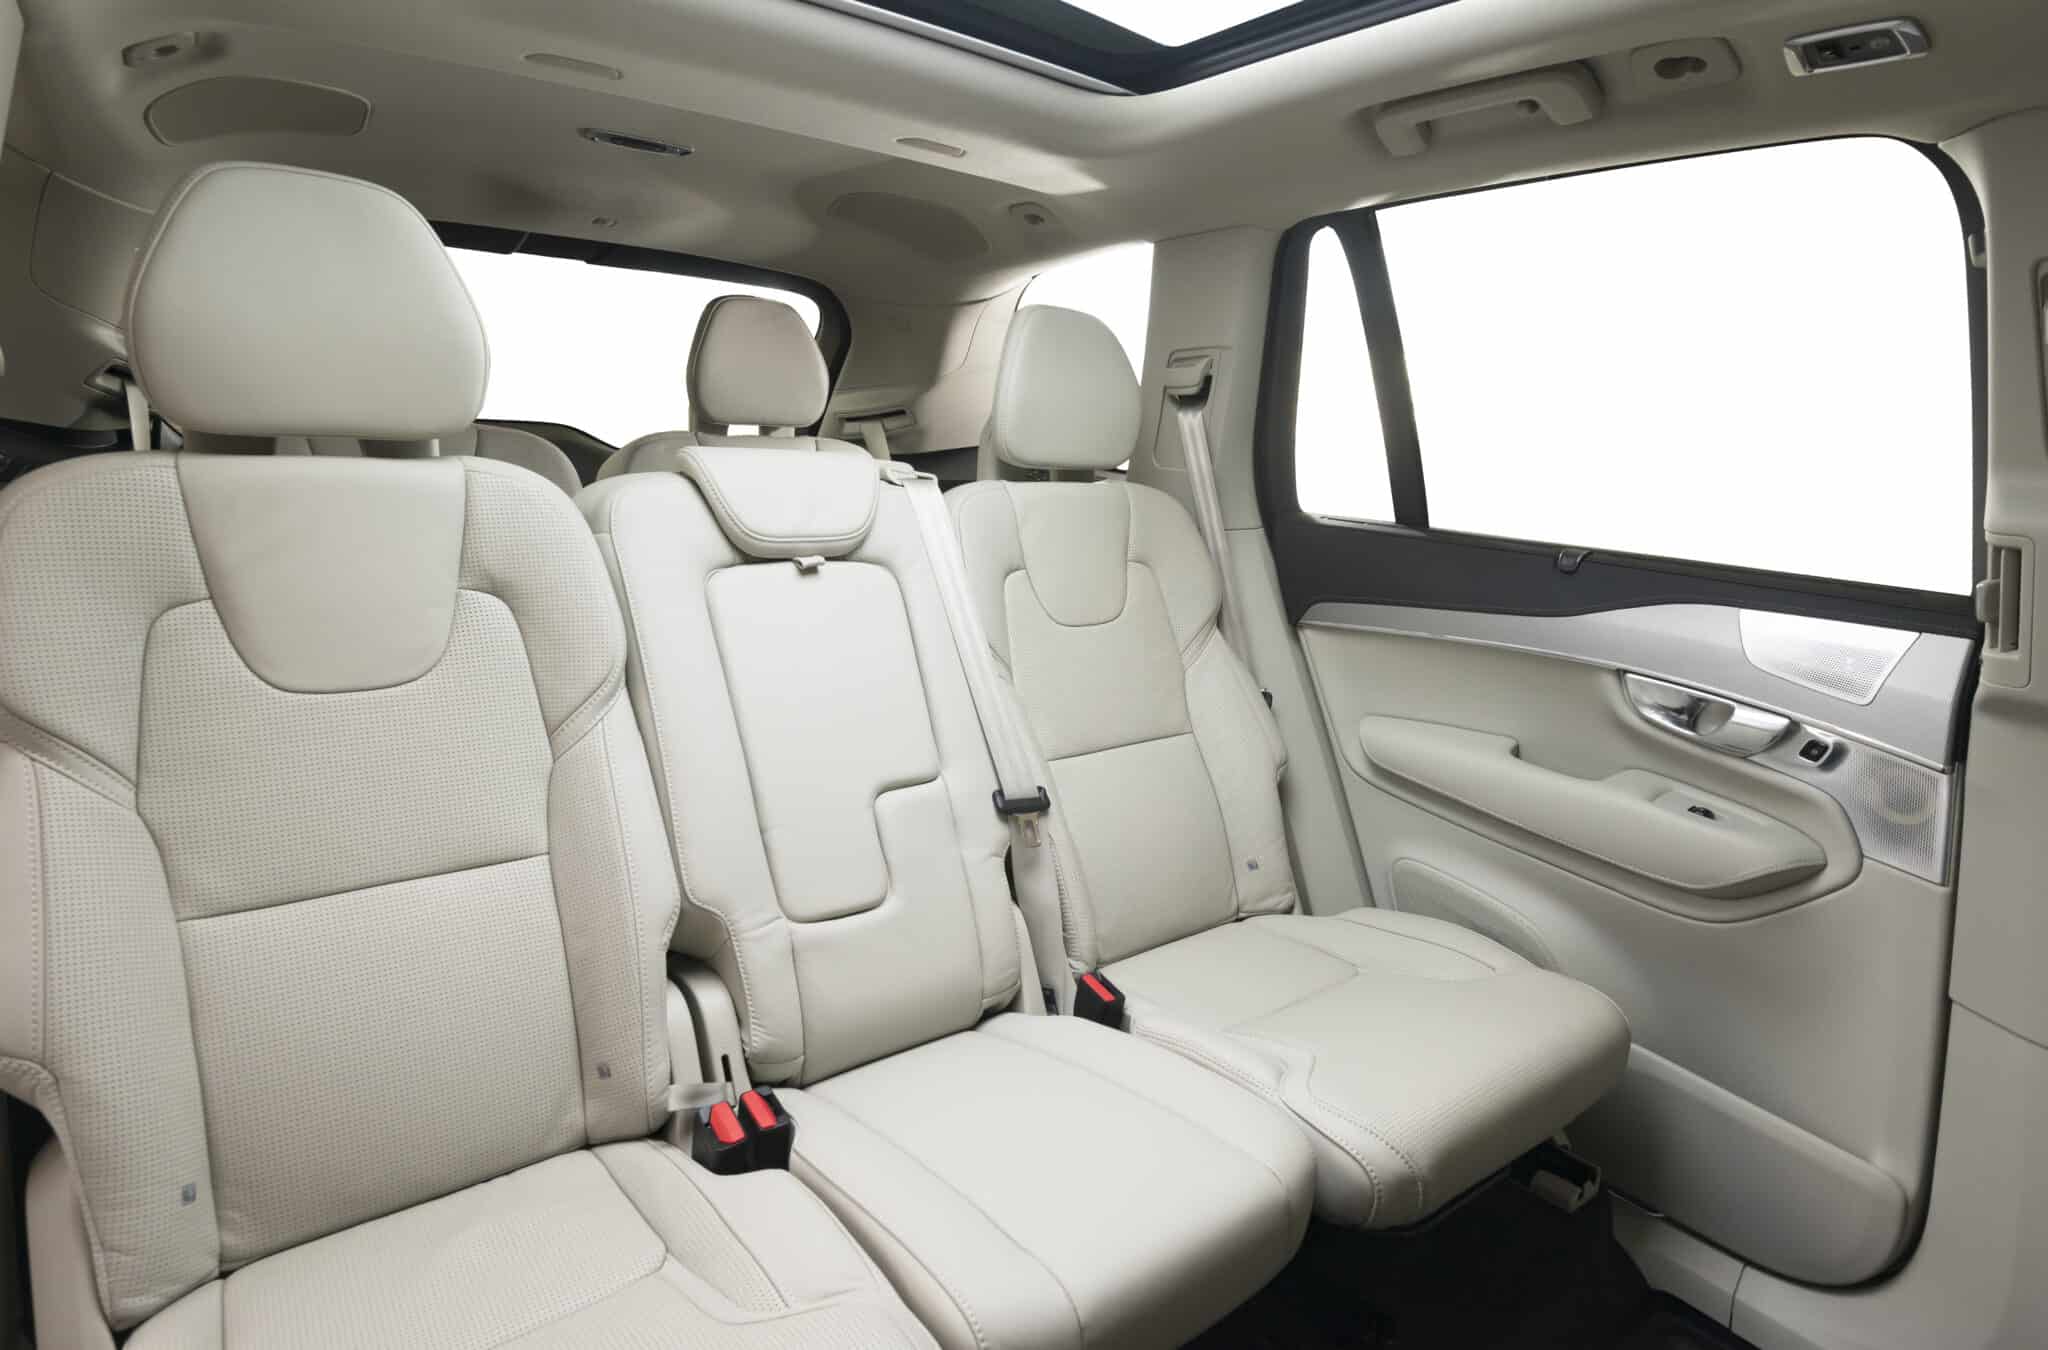 Car Interior Backseats 2021 08 27 11 16 34 Utc 2048x1350 